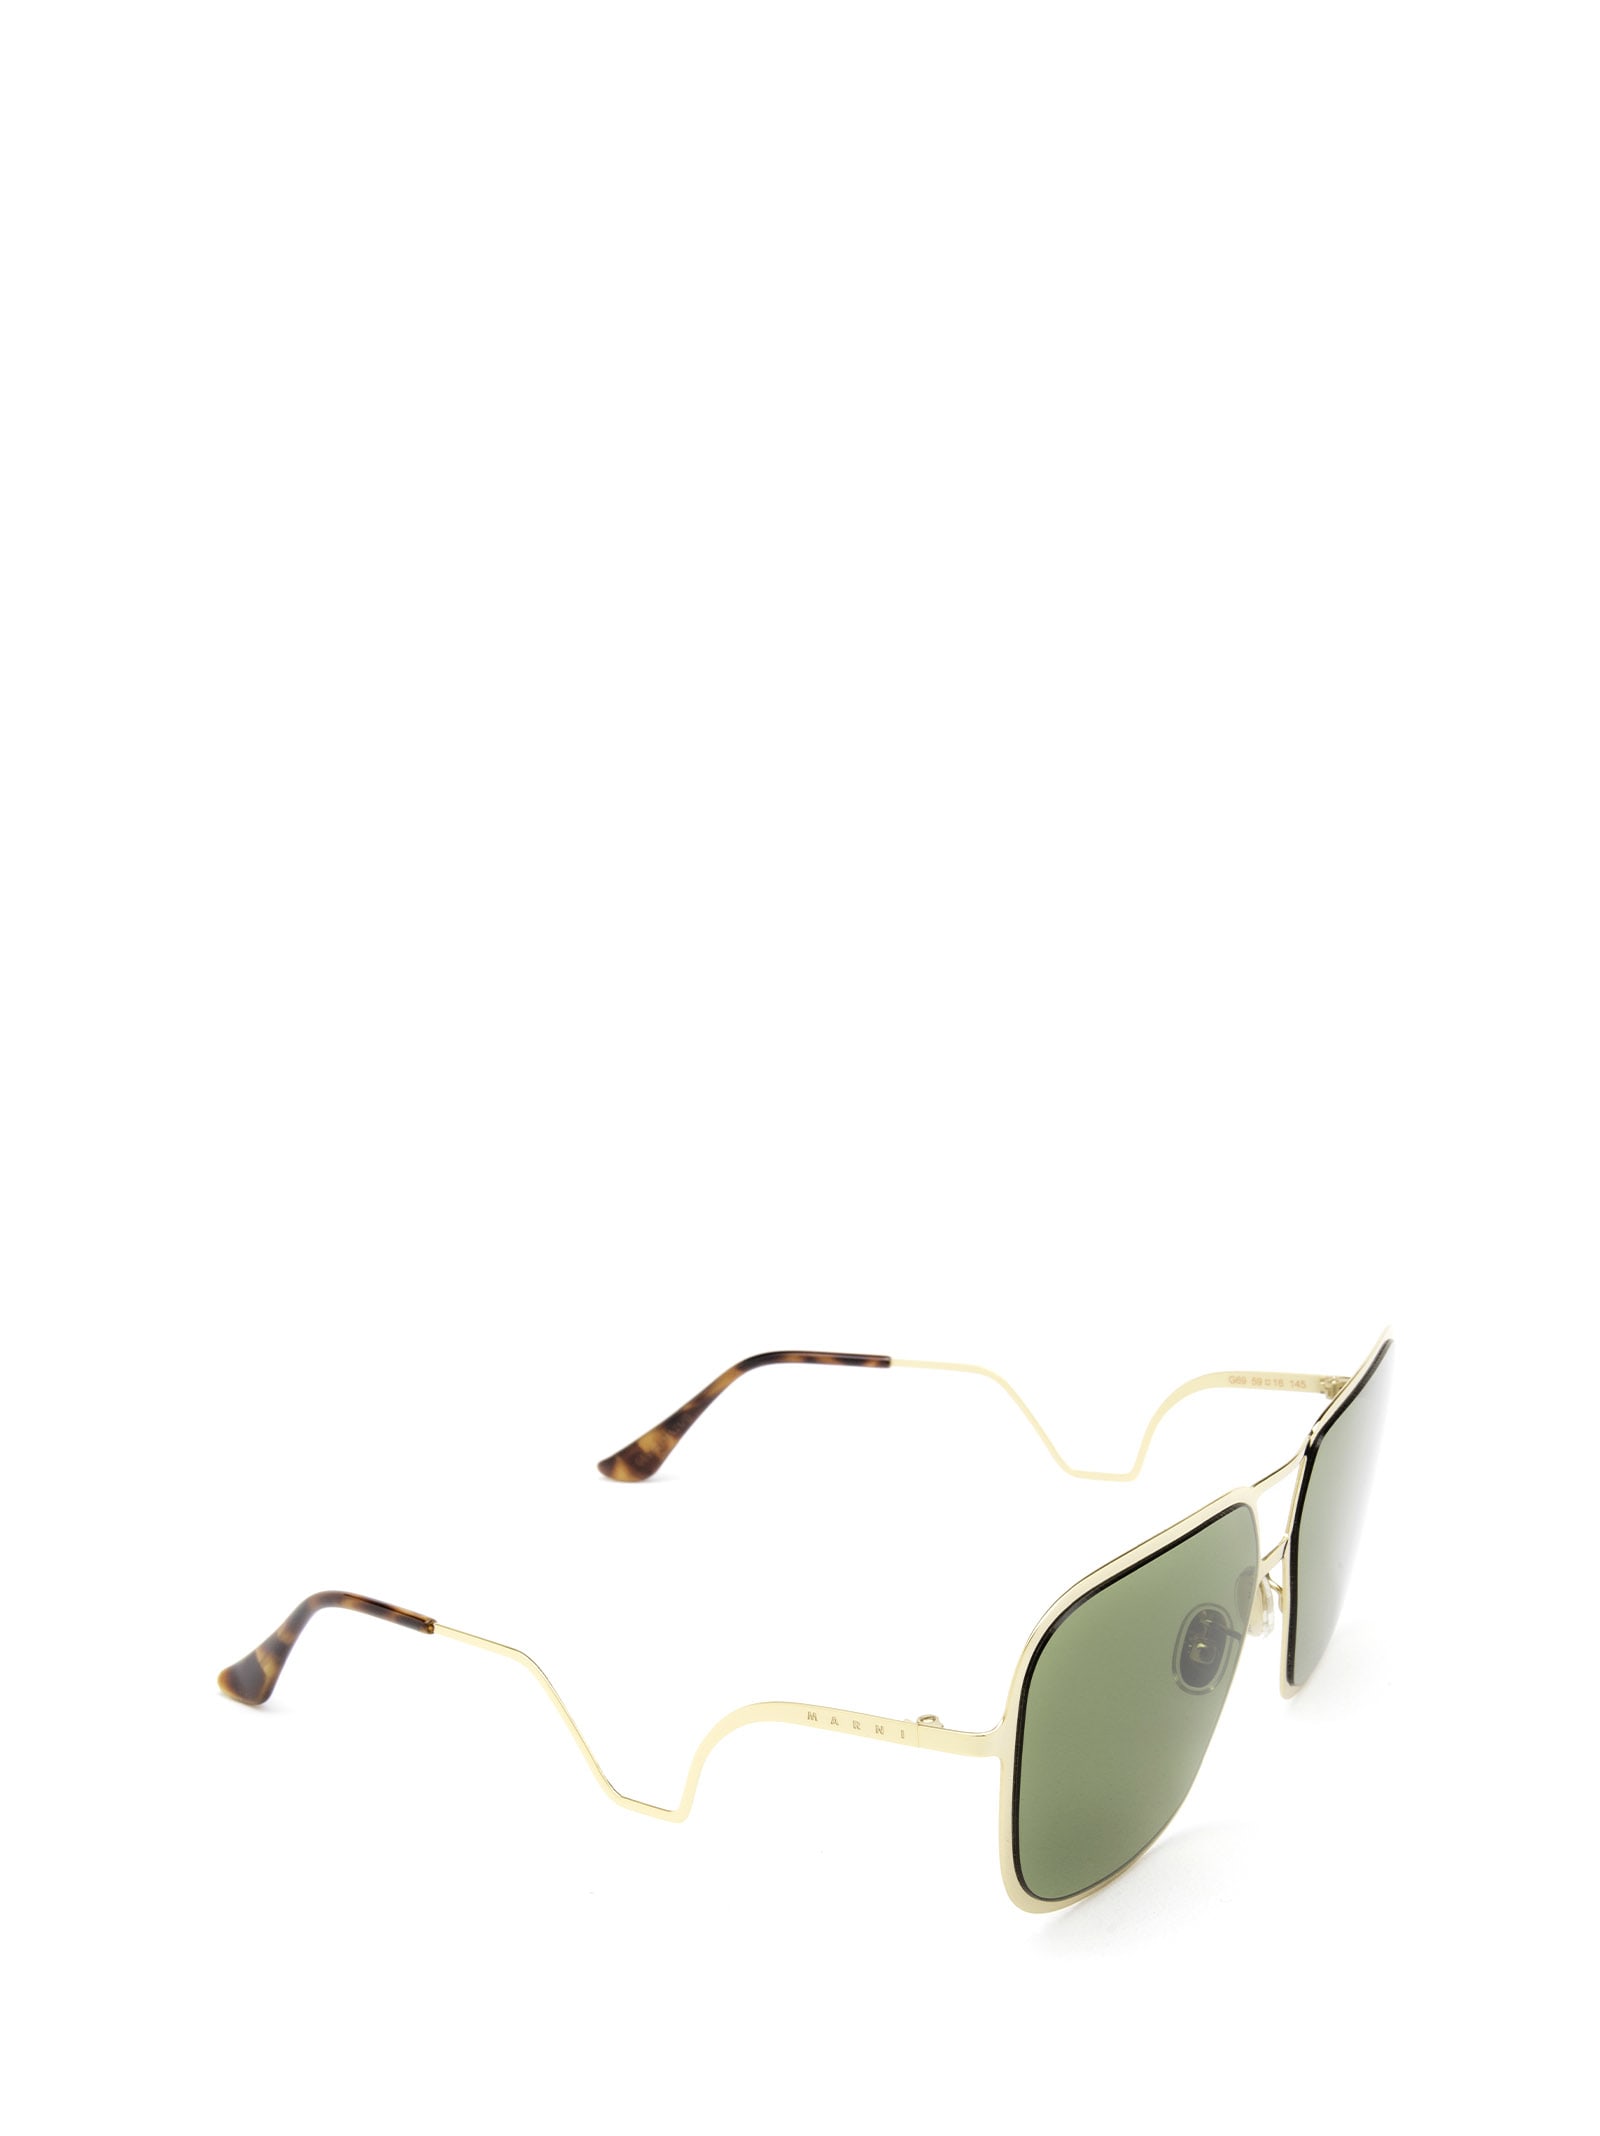 Shop Marni Eyewear Ha Long Bay Green Sunglasses